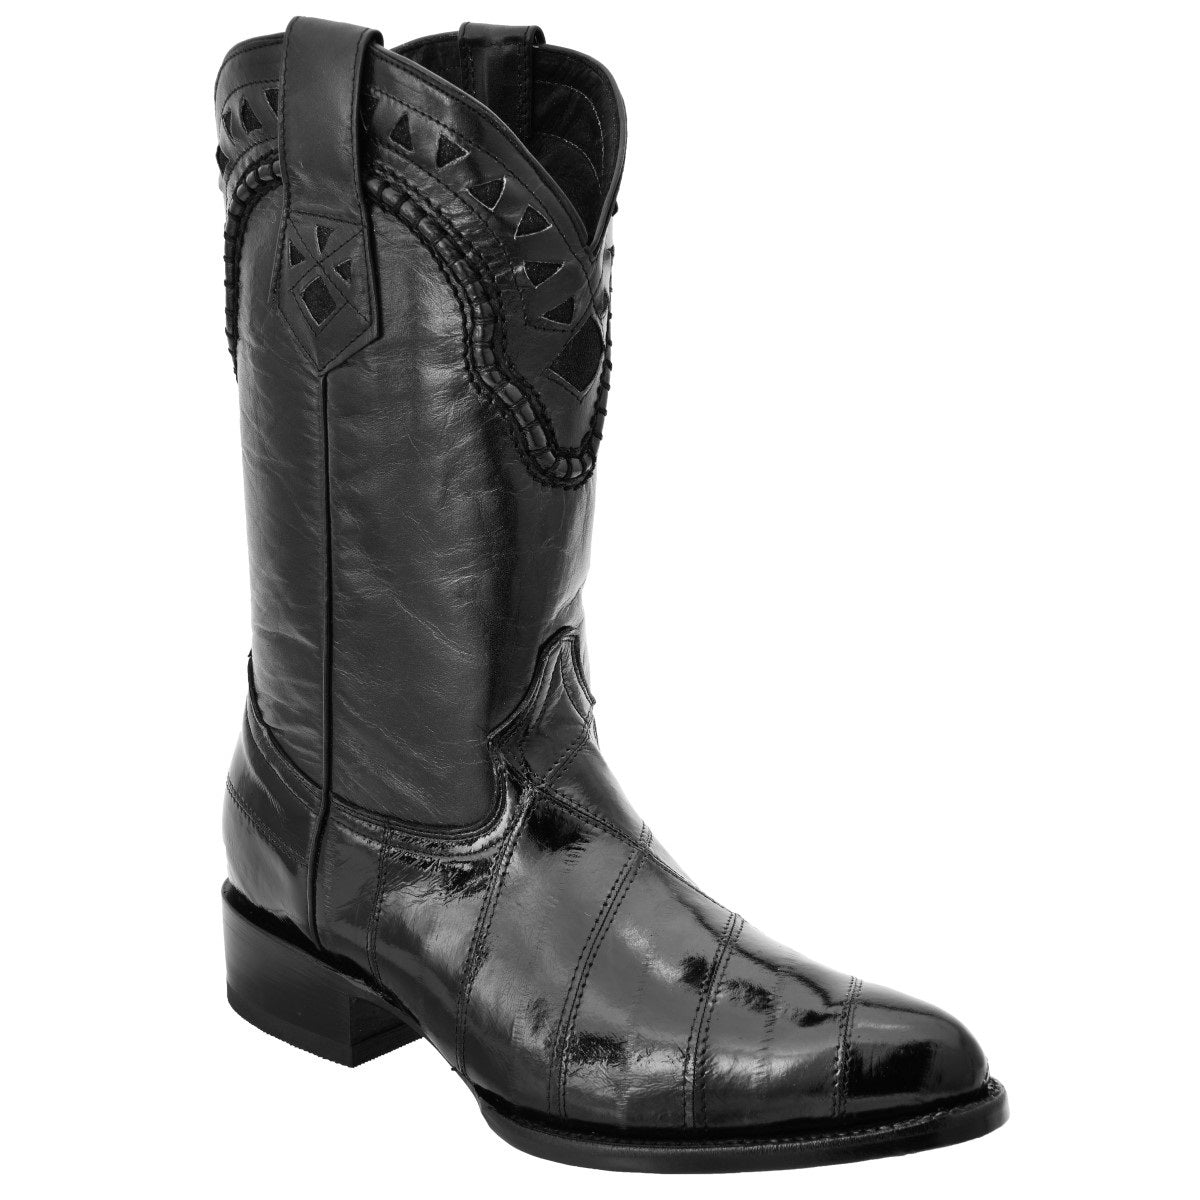 Botas Vaqueras TM-WD0246 - Western Boots